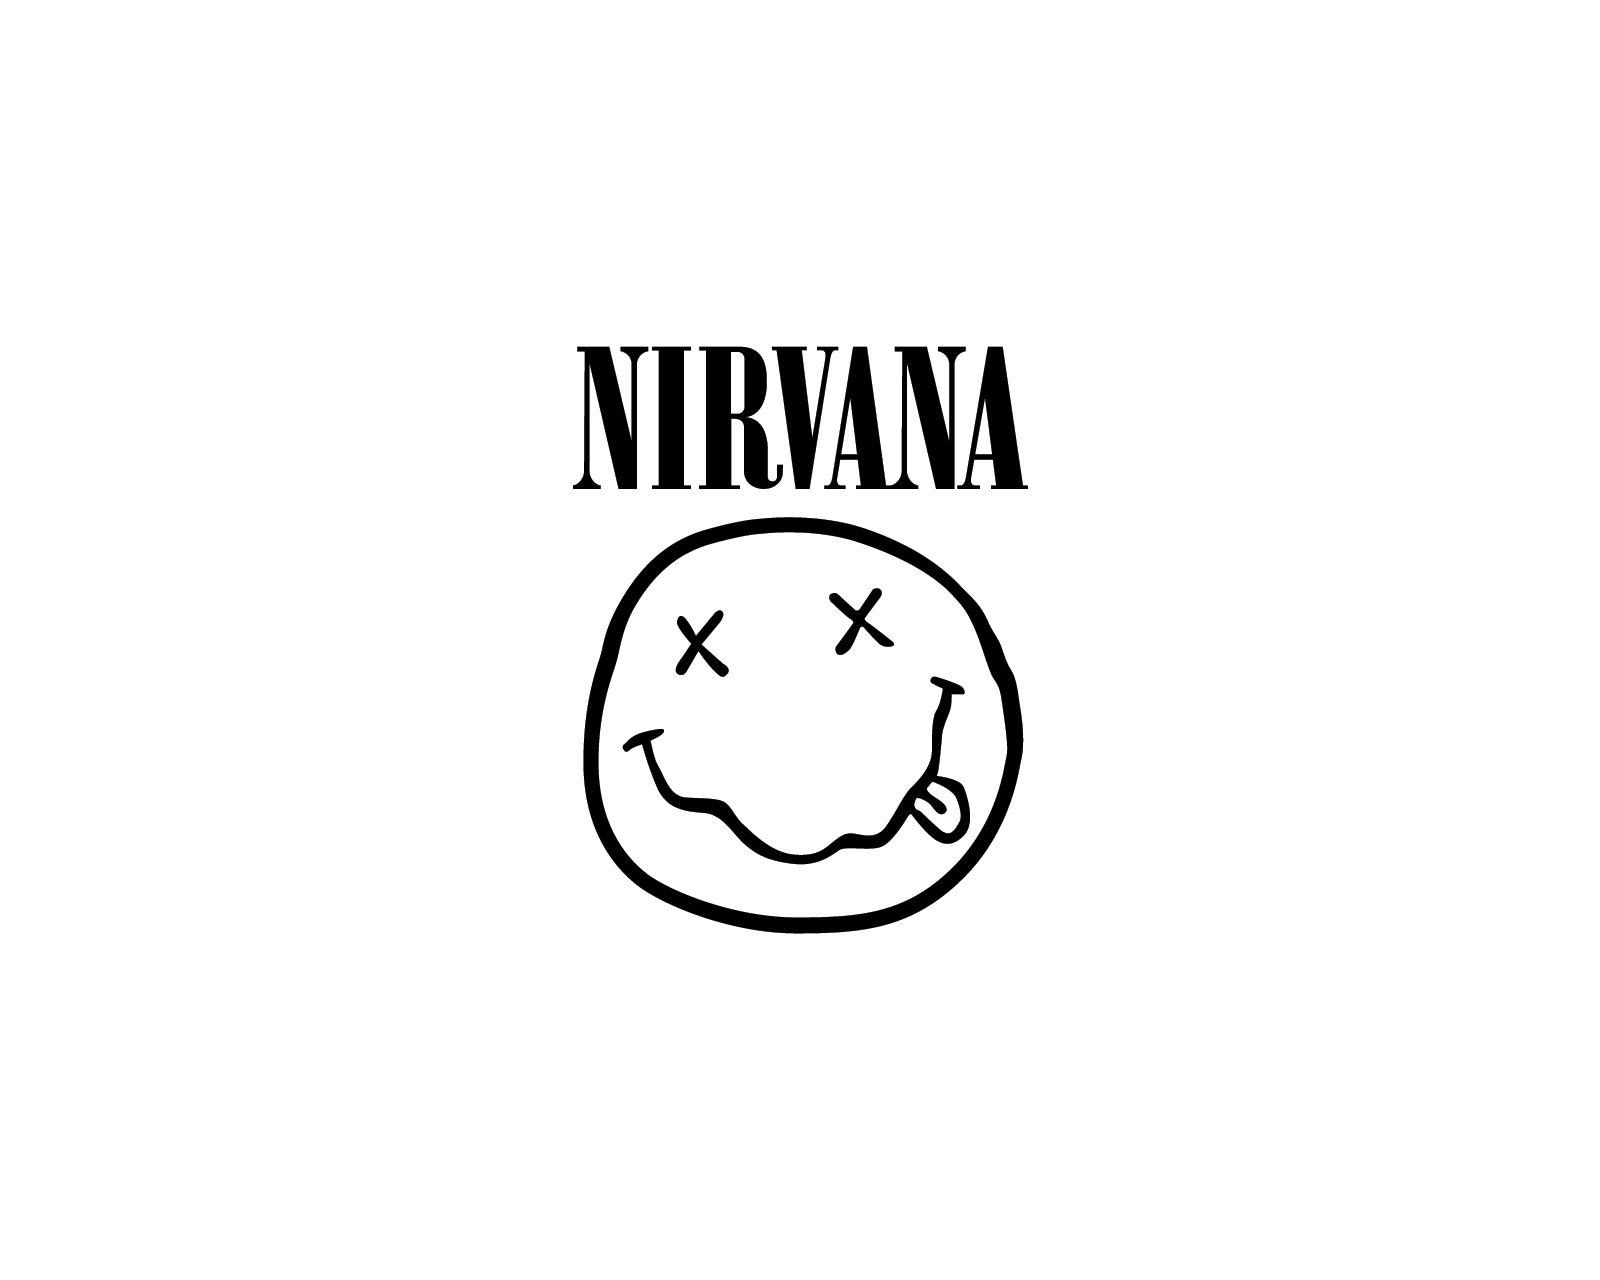 Nirvana Rock Band Logo - Grunge | Band logos - Rock band logos, metal bands logos, punk bands ...